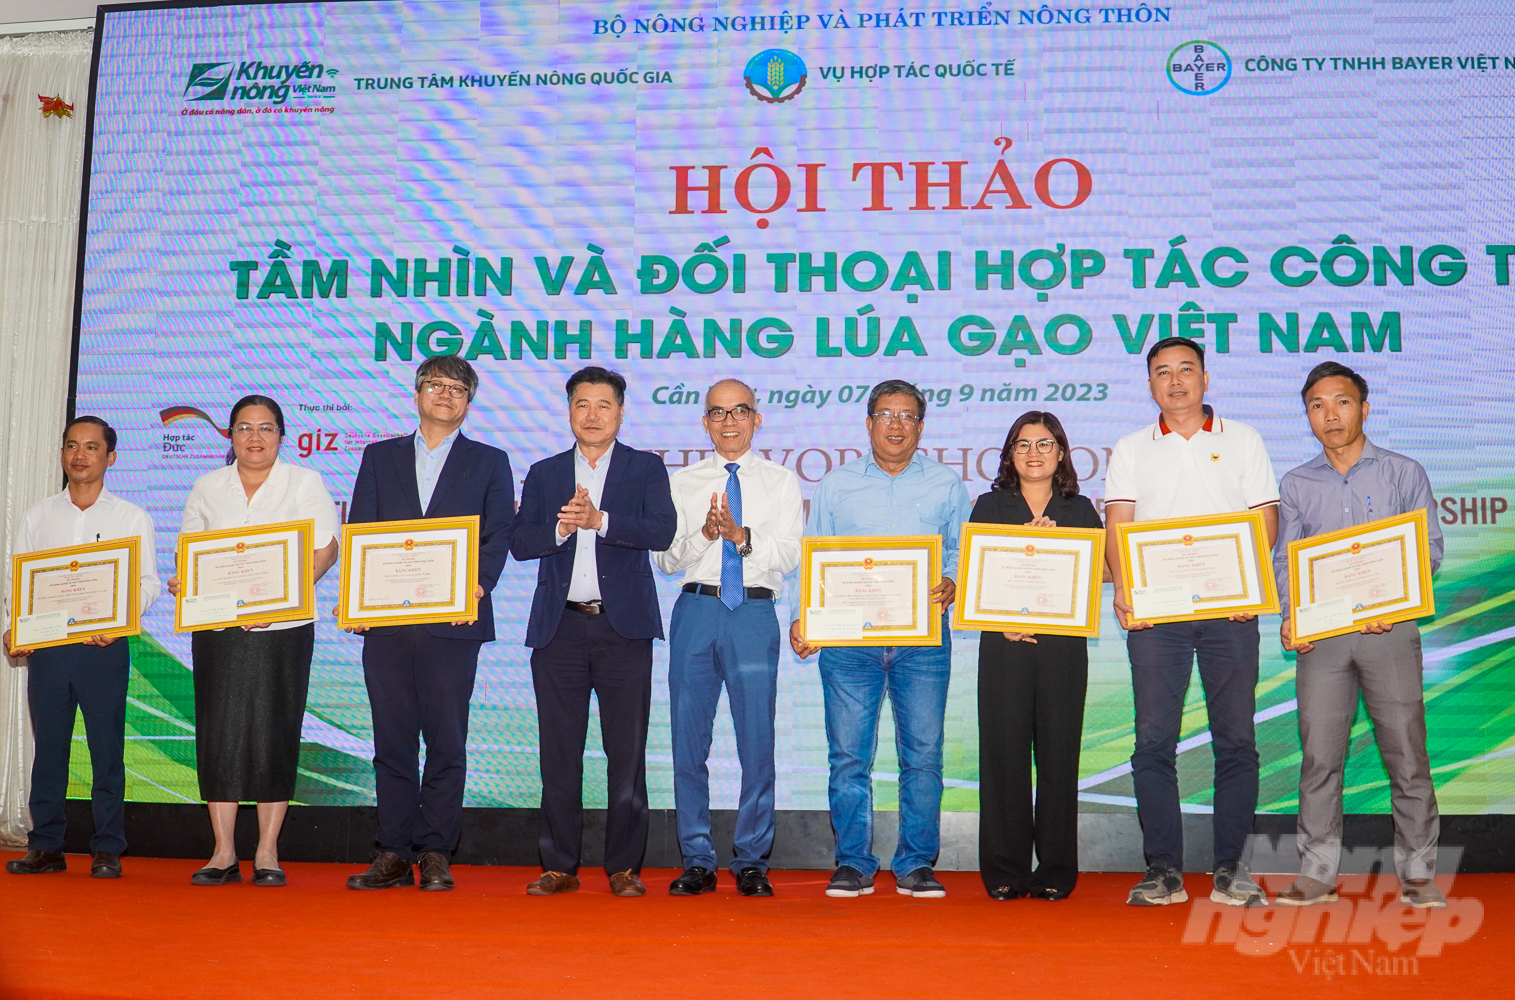 8 tập thể và 2 cá nhân có thành tích xuất sắc trong tổ chức sự kiện Agritechnica Asia Live 2022 nhận bằng khen của Bộ NN-PTNT. Ảnh: Kim Anh.